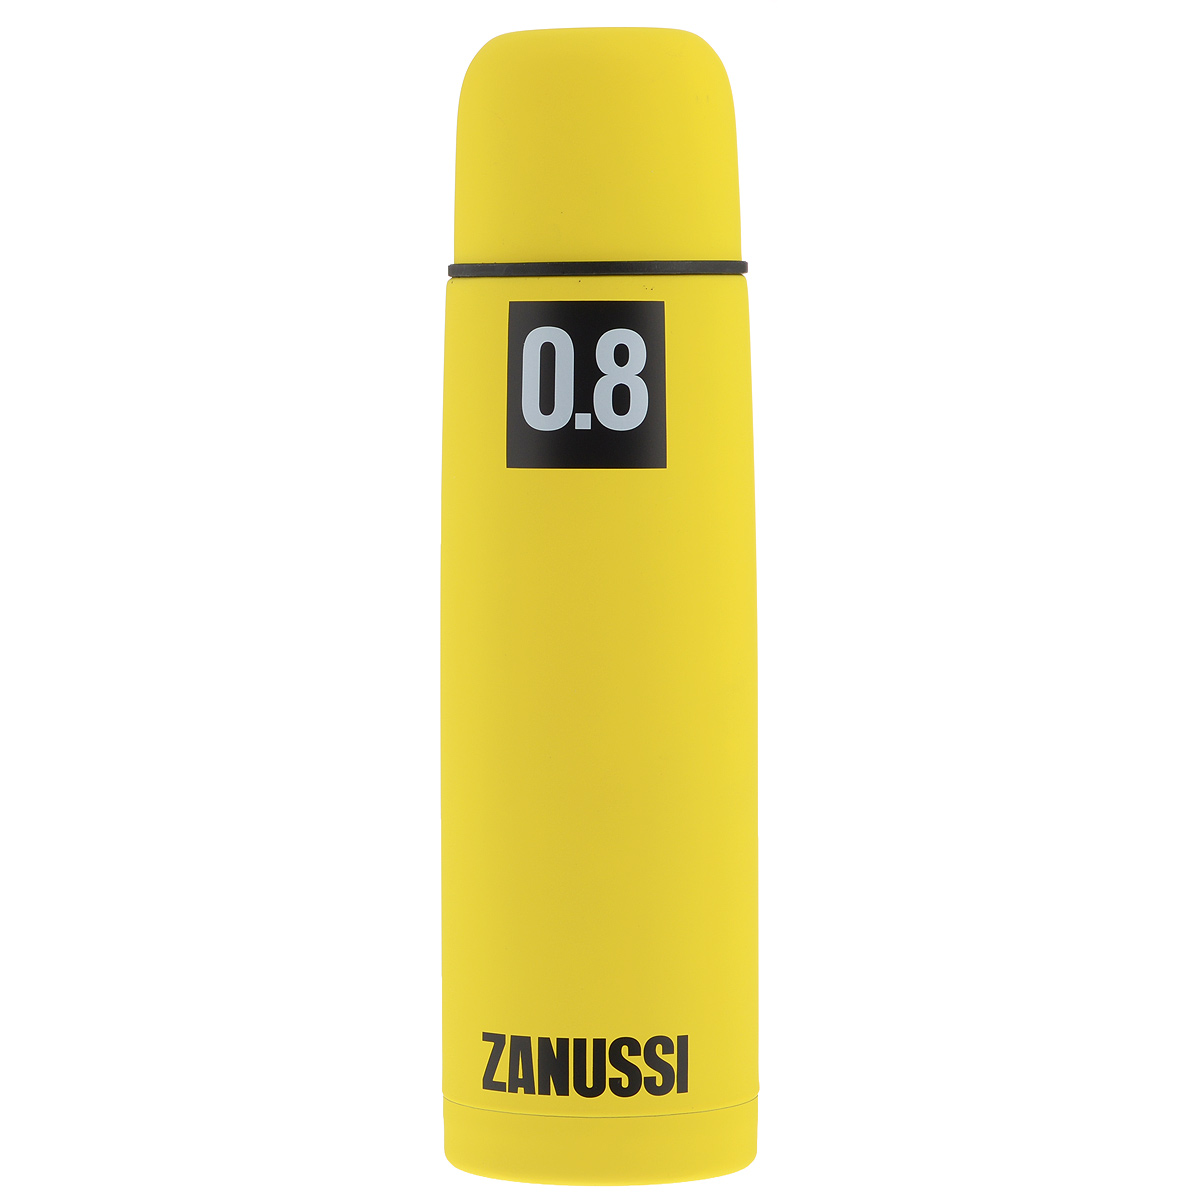 фото Термос "Zanussi", цвет: желтый, 800 мл. ZVF41221CF